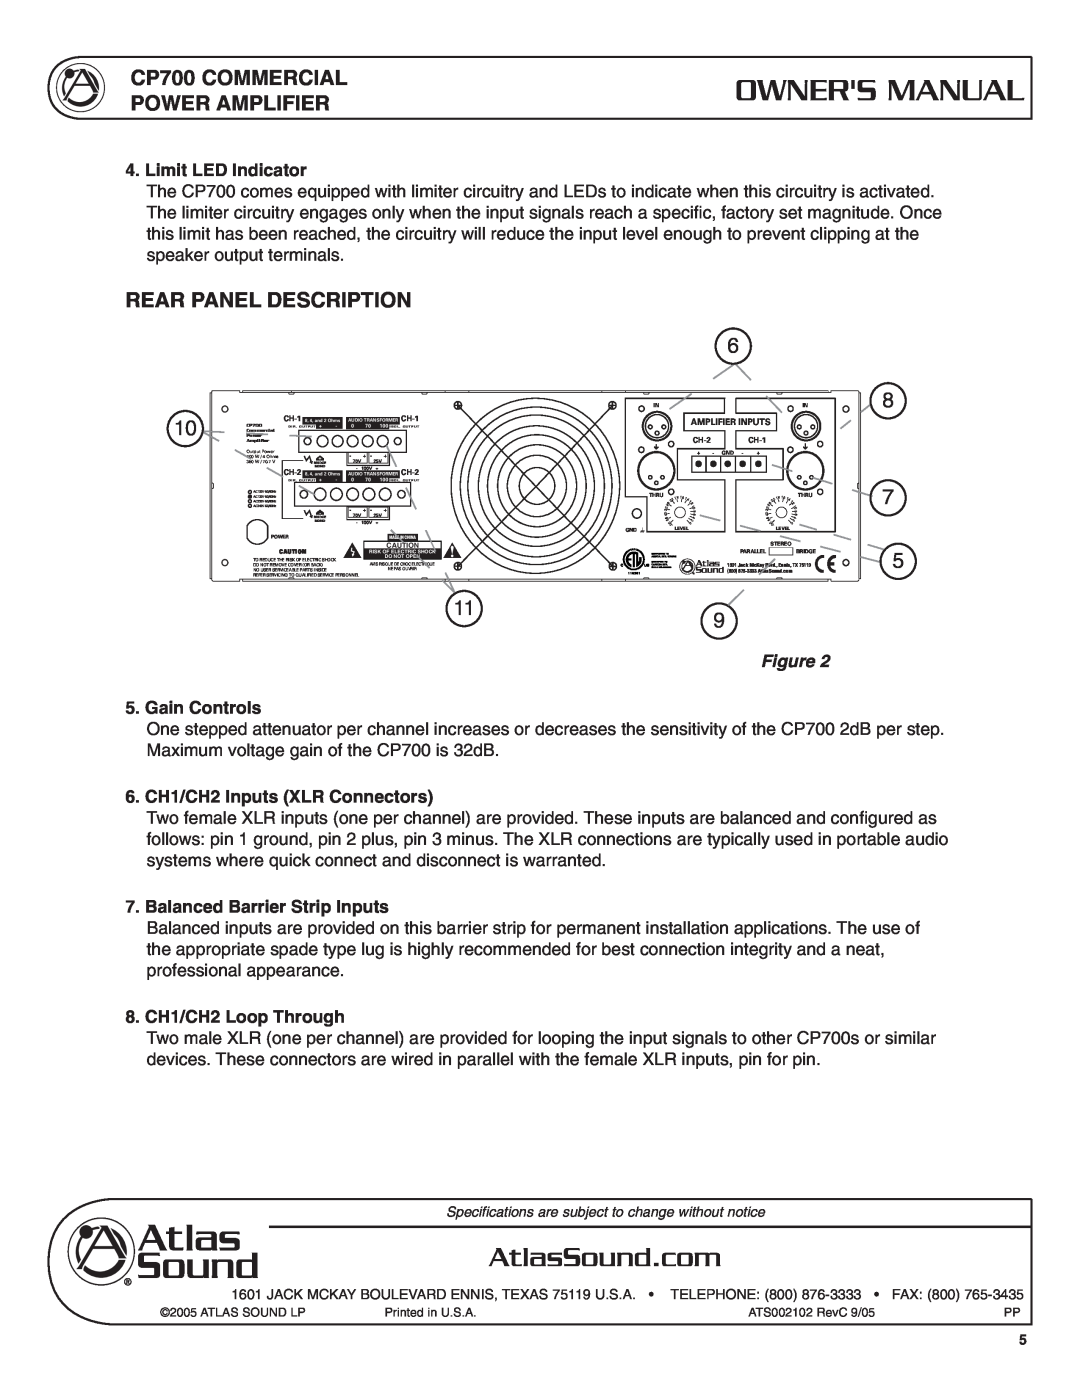 Atlas Sound CP700 Rear Panel Description, Limit LED Indicator, Gain Controls, 6. CH1/CH2 Inputs XLR Connectors 